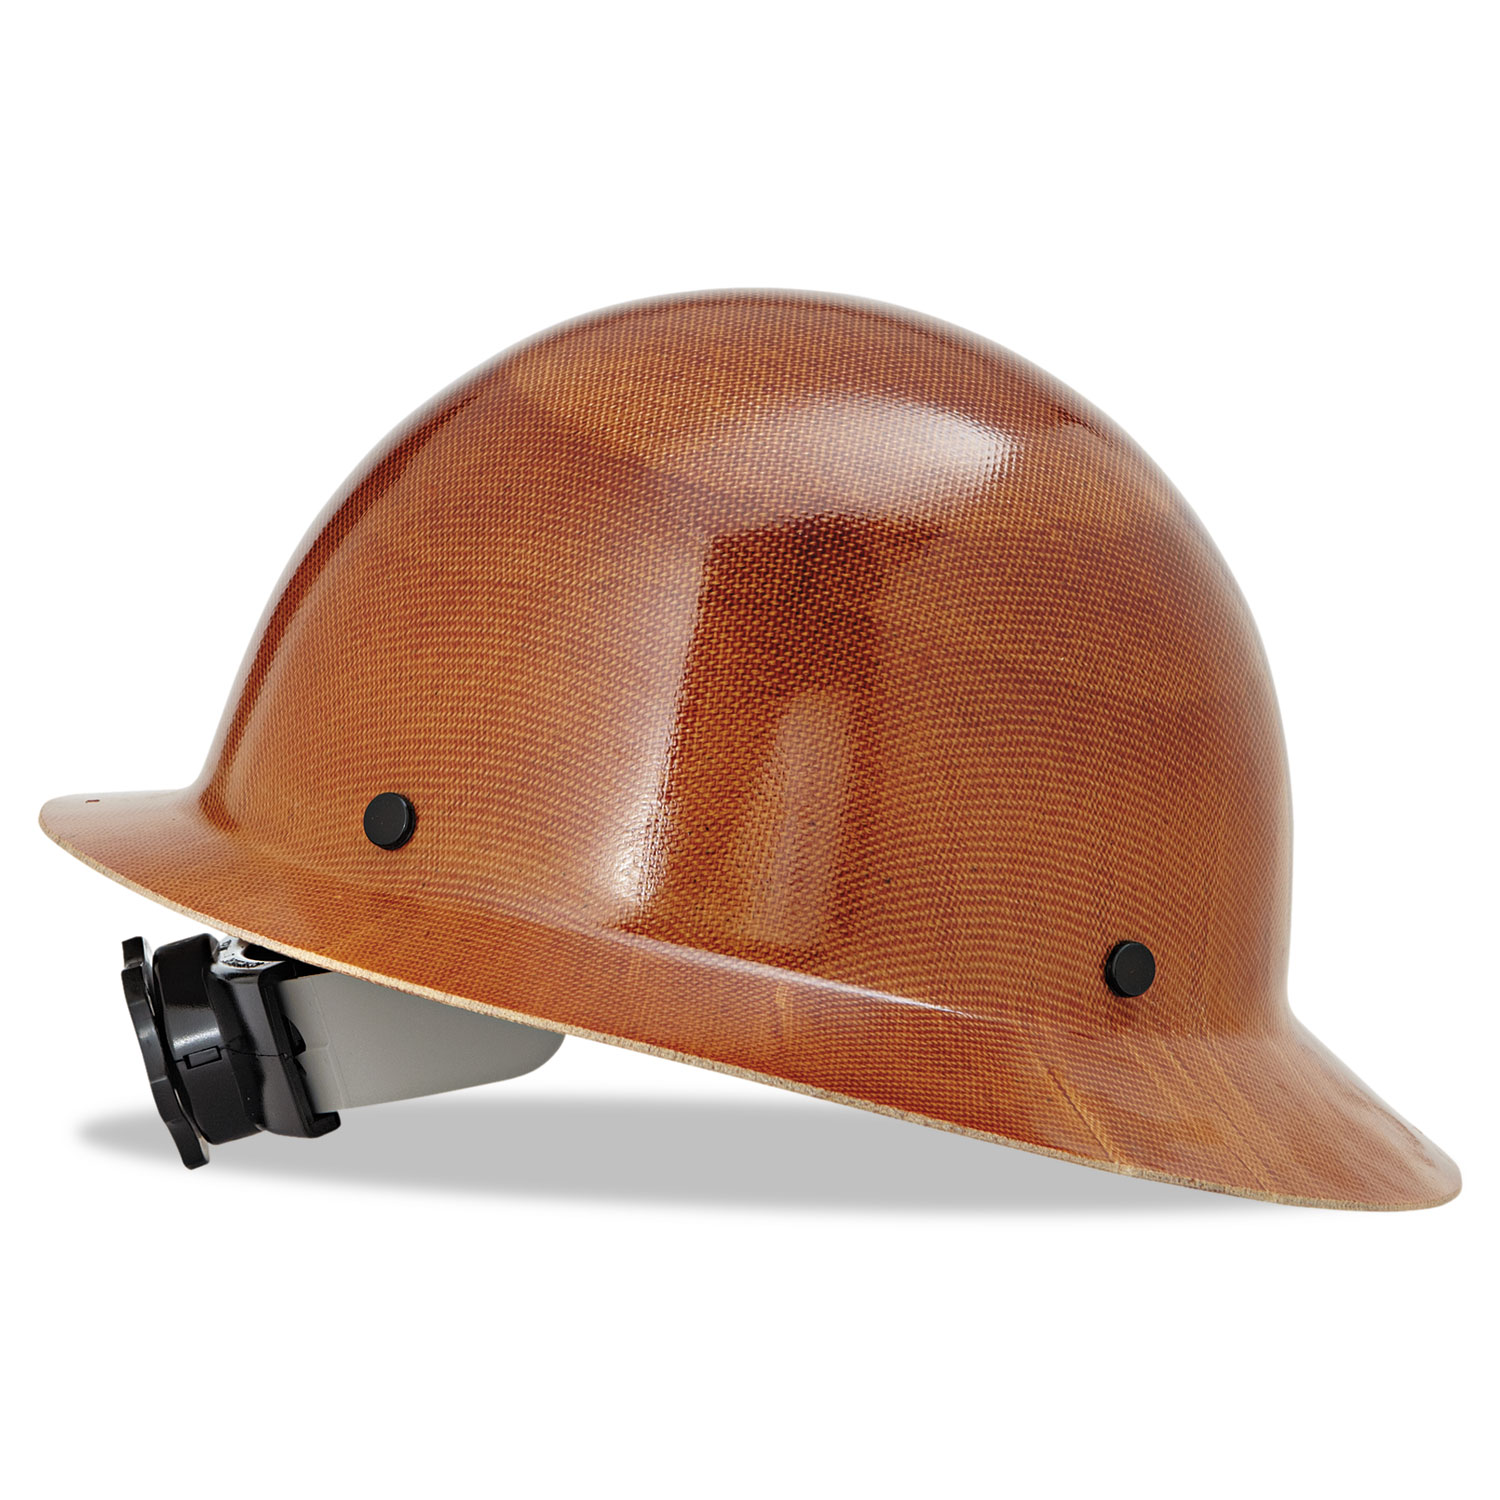  MSA 475407 Skullgard Protective Hard Hats, Ratchet Suspension, Size 6 1/2 - 8, Natural Tan (MSA475407) 